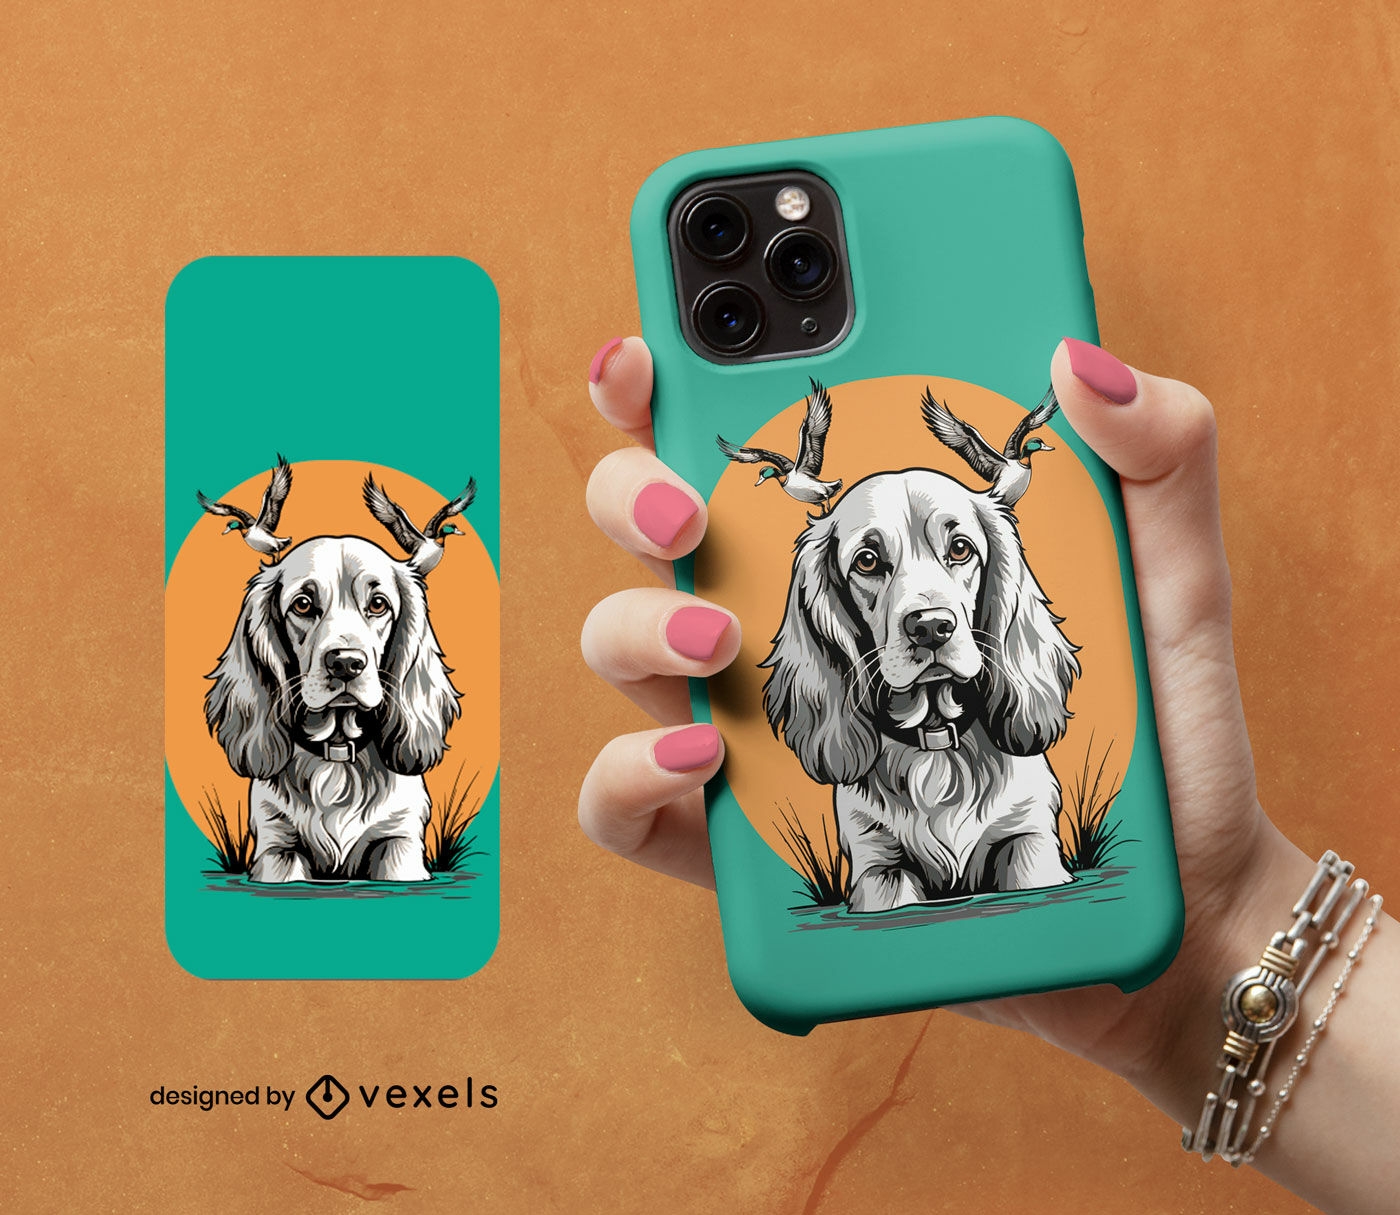 Diseño de funda para teléfono con perro con astas.